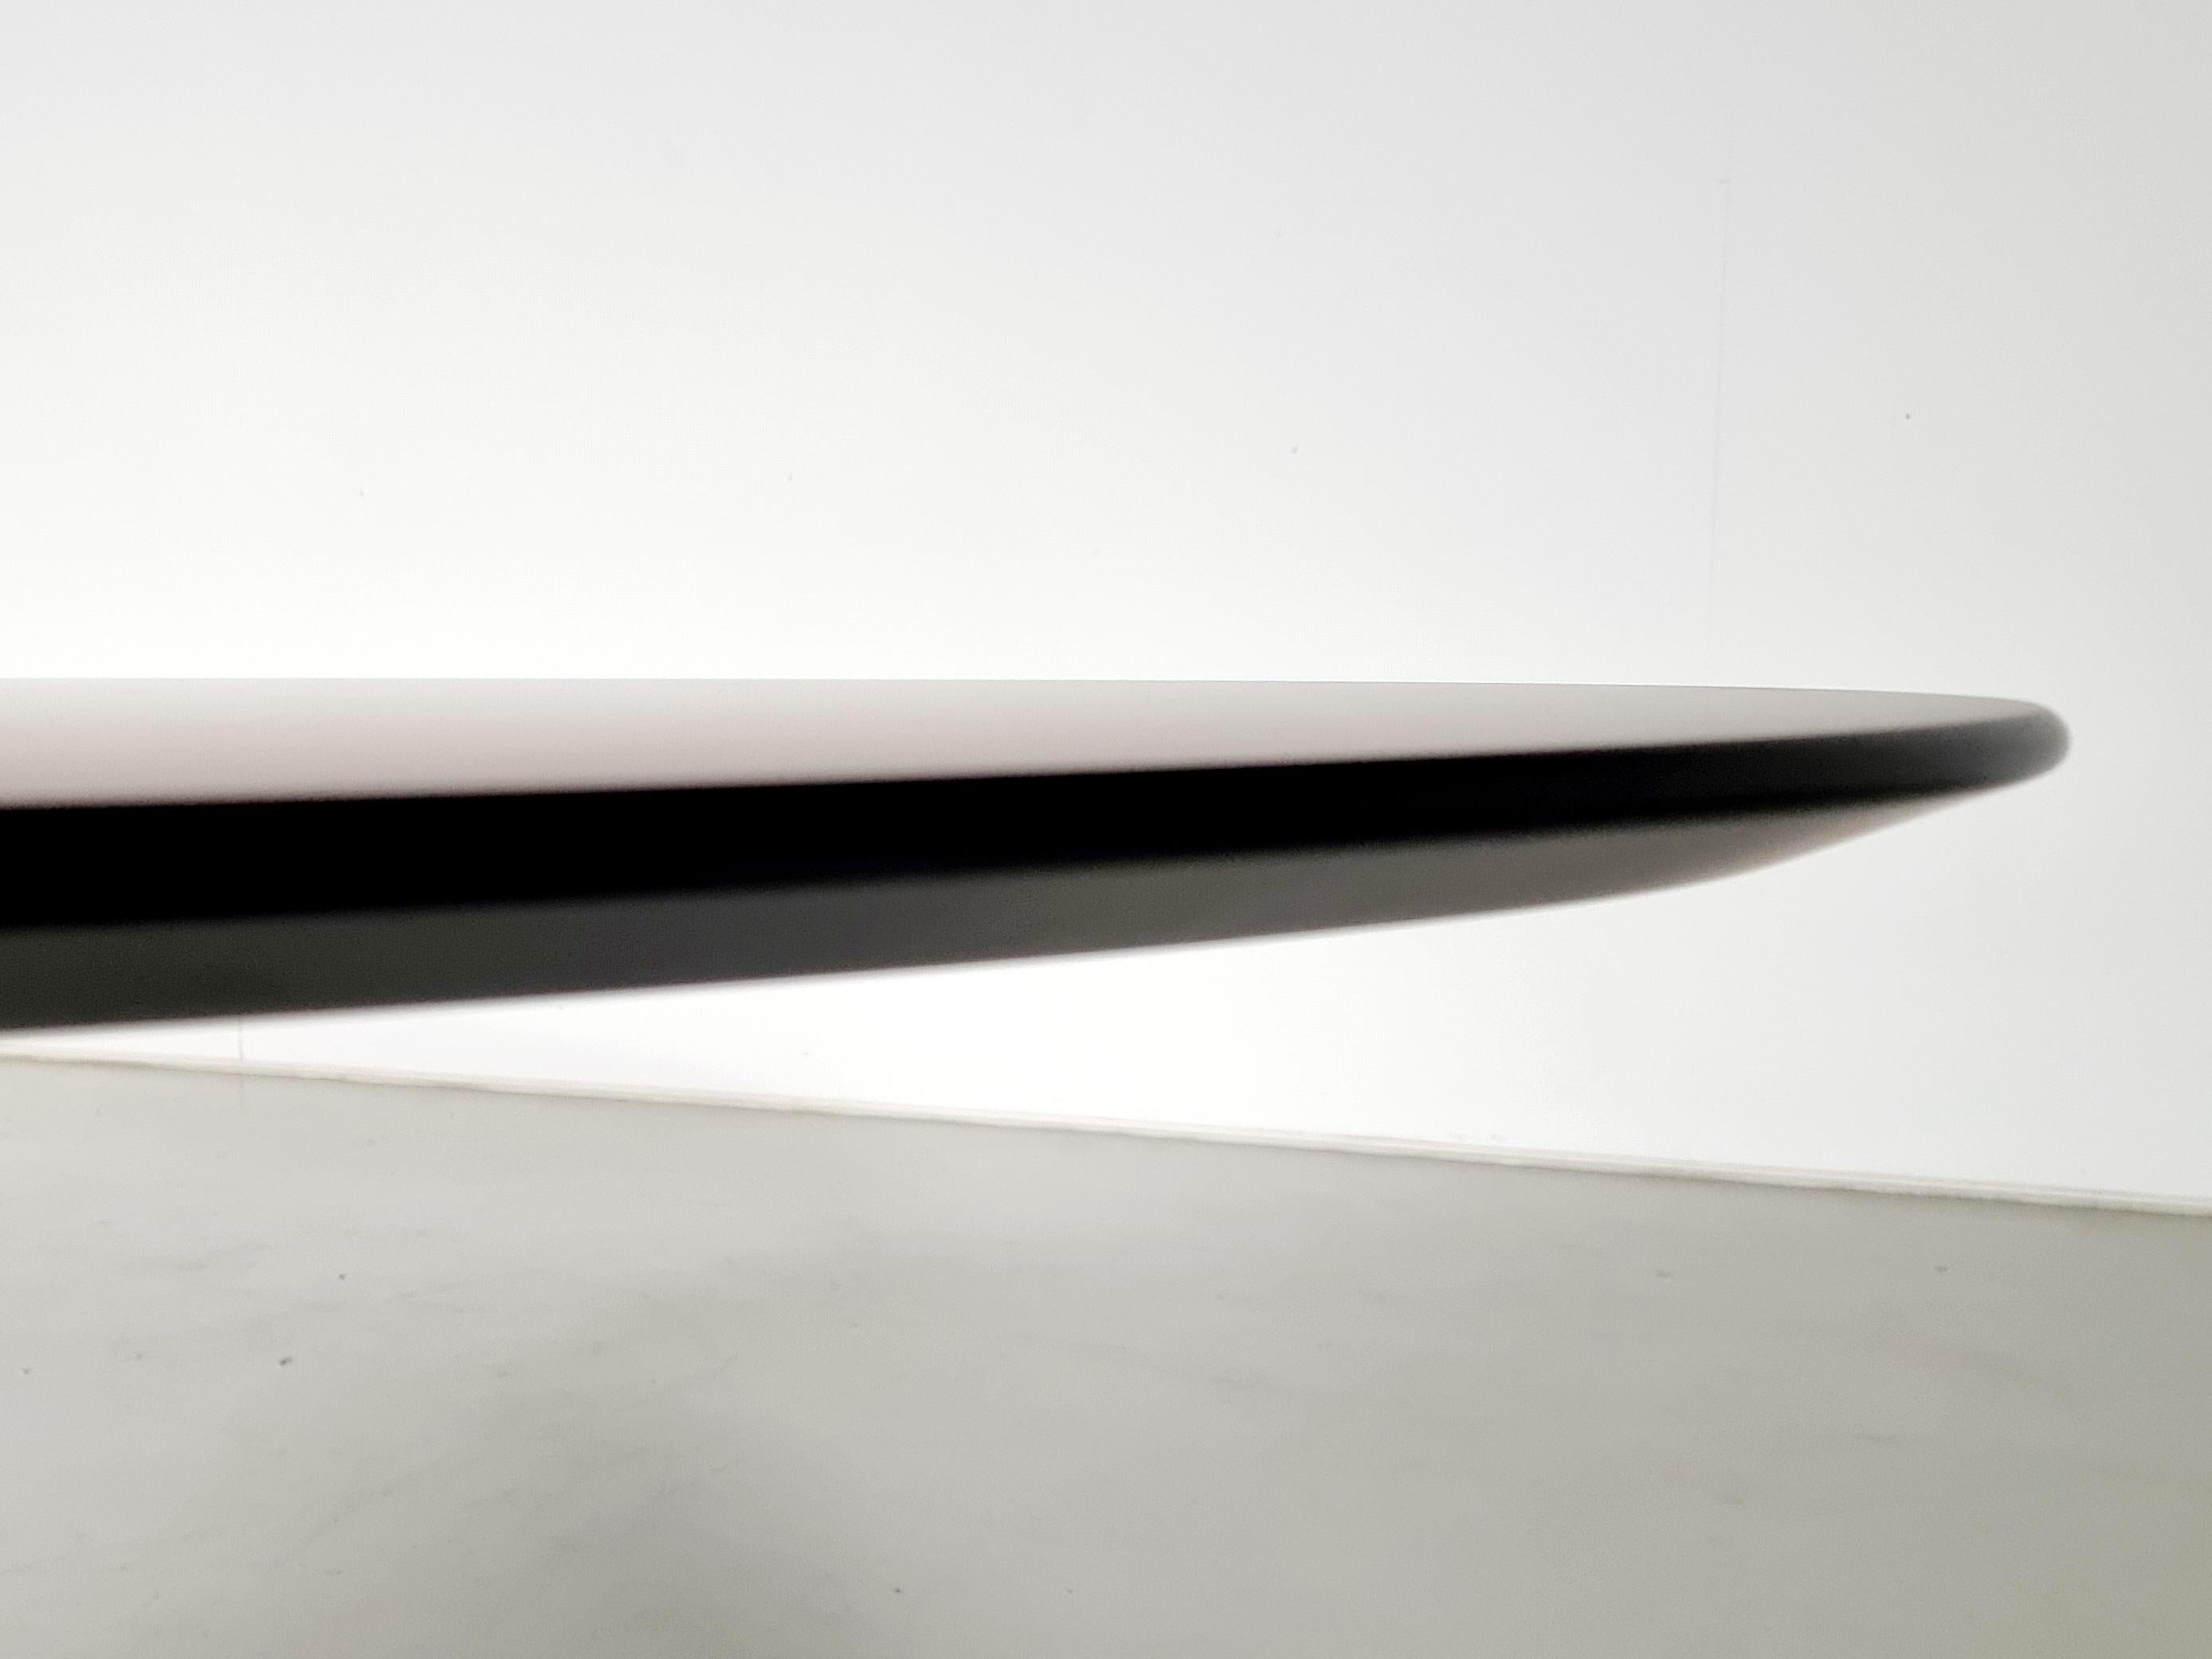 European Tulip Table in black laminate by Eero Saarinen for Knoll International